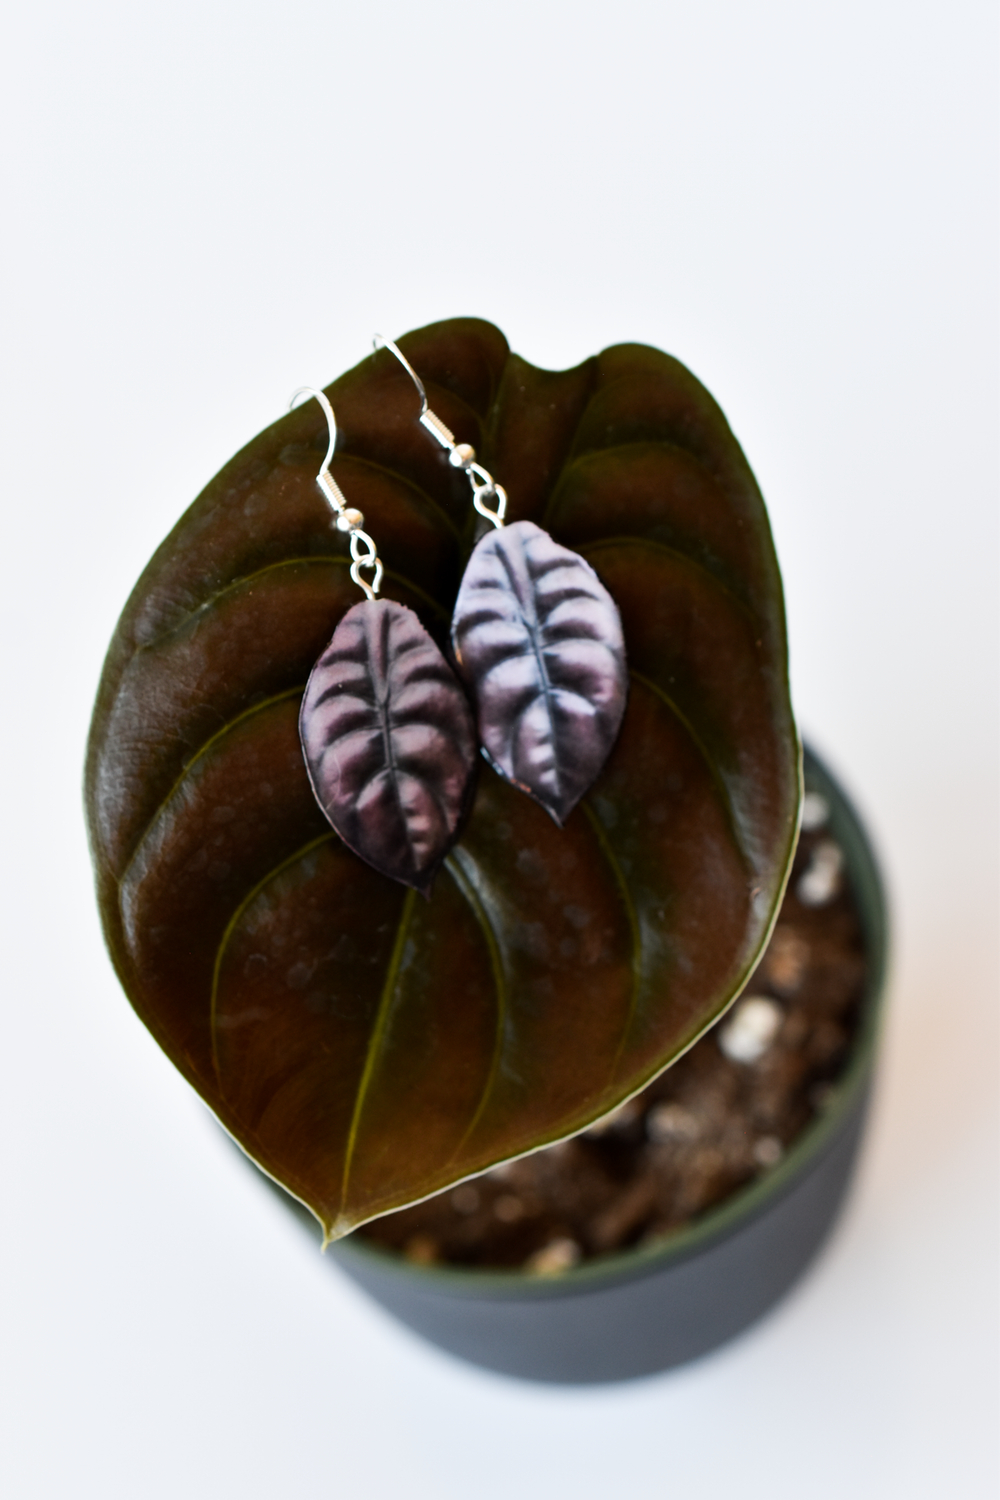 Alocasia Cuprea “Red Secret” Plant Earrings | Leaf Earrings